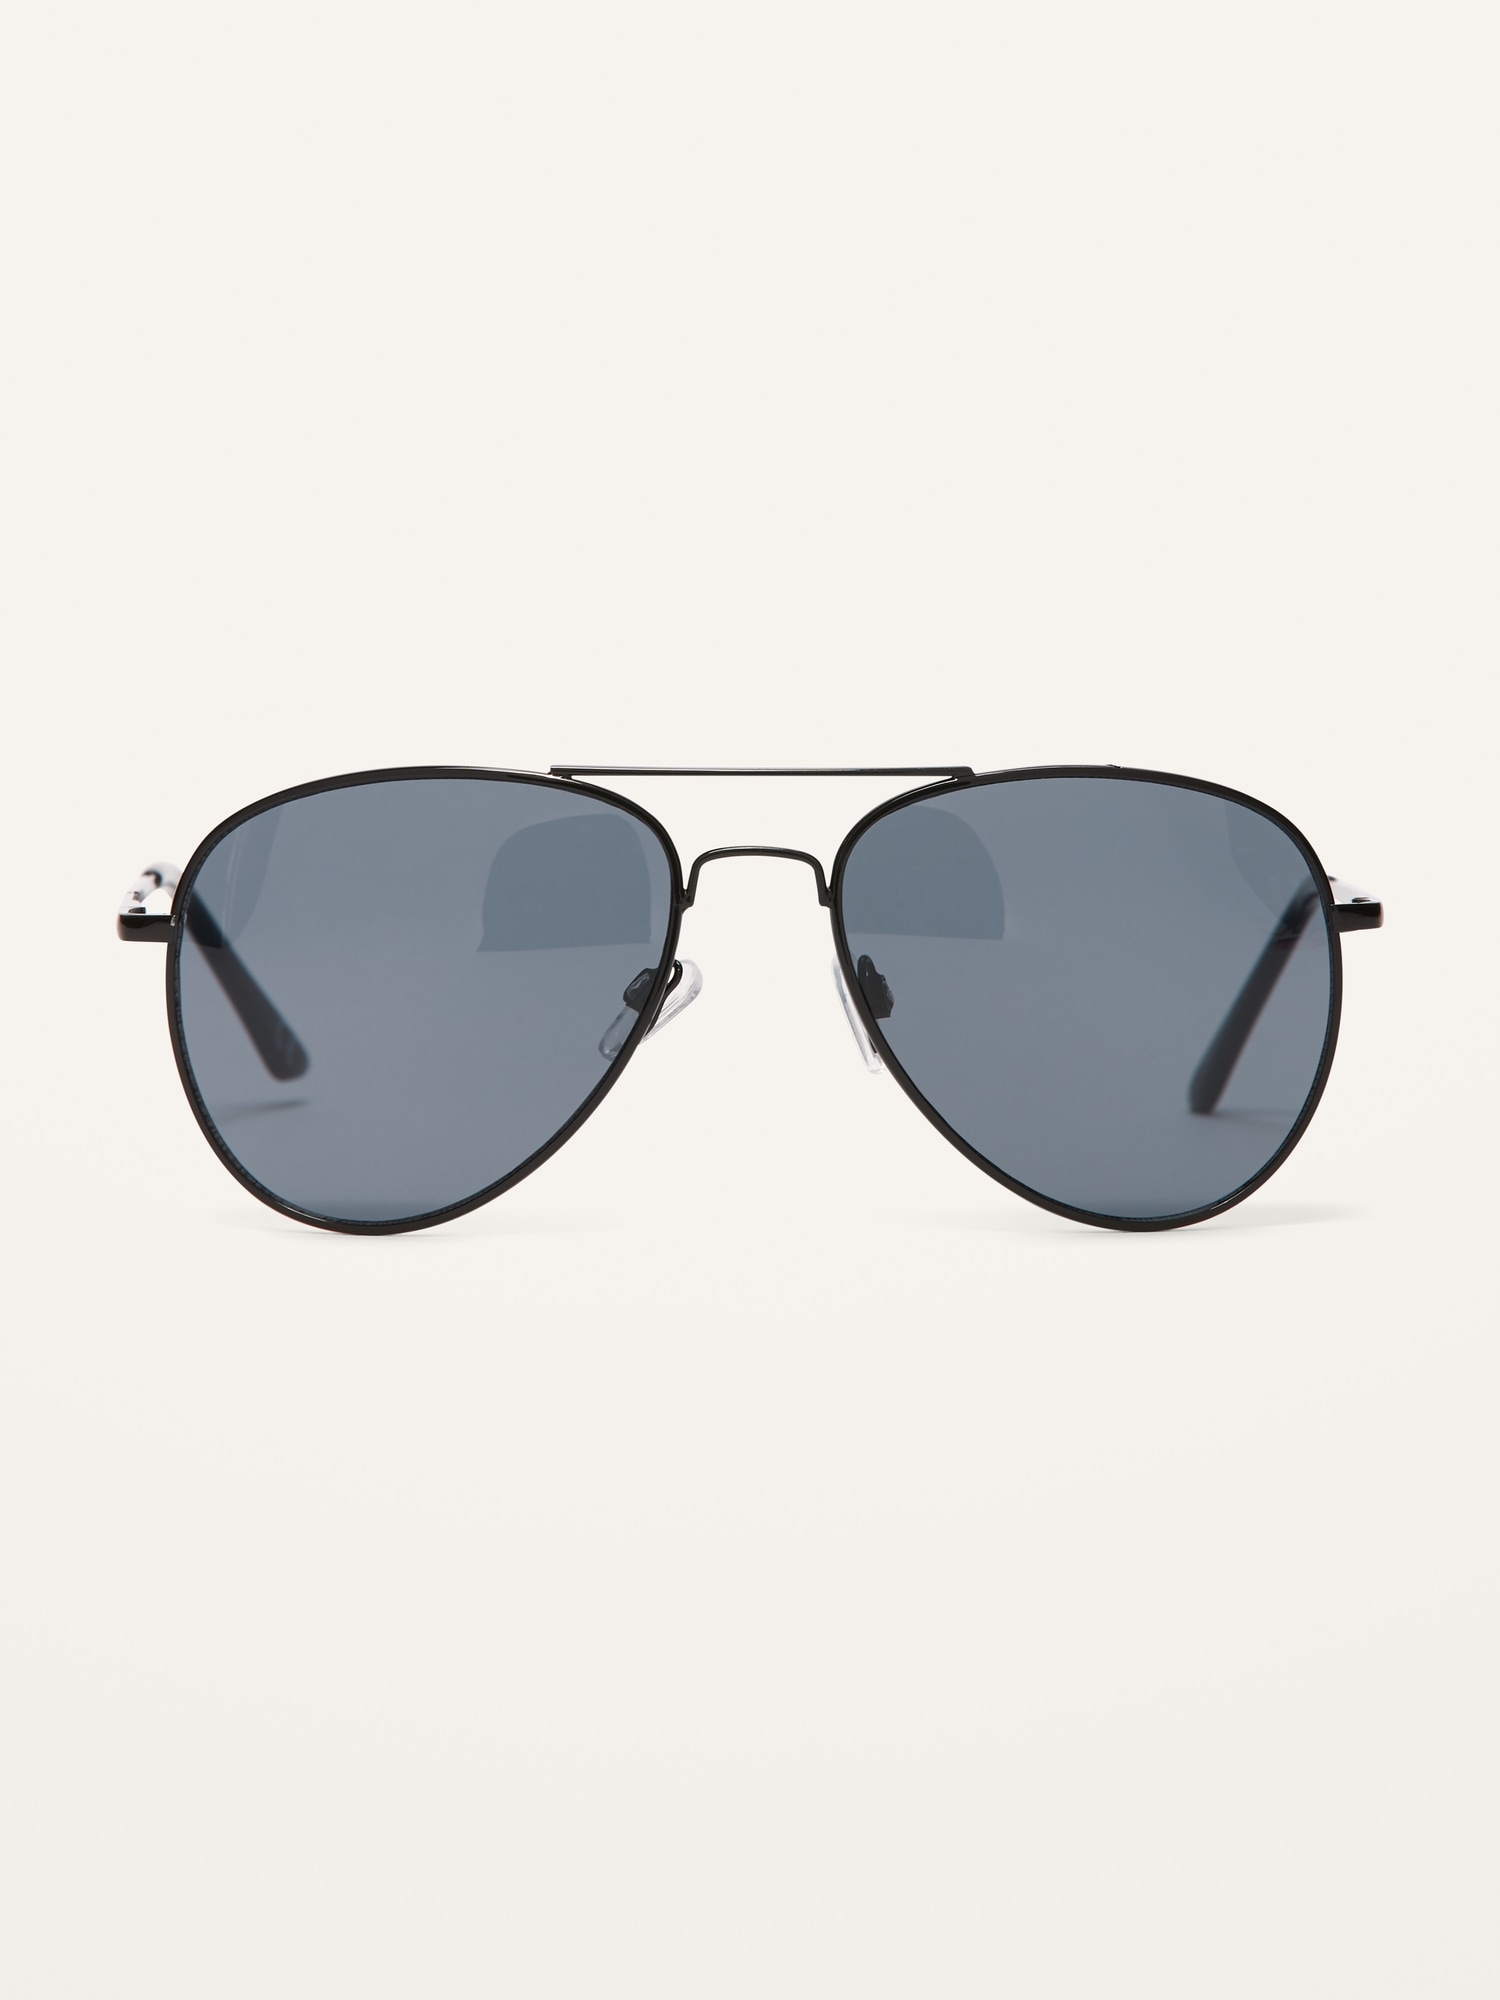 Old Navy Tortoiseshell Square-Frame Sunglasses For Women - ShopStyle